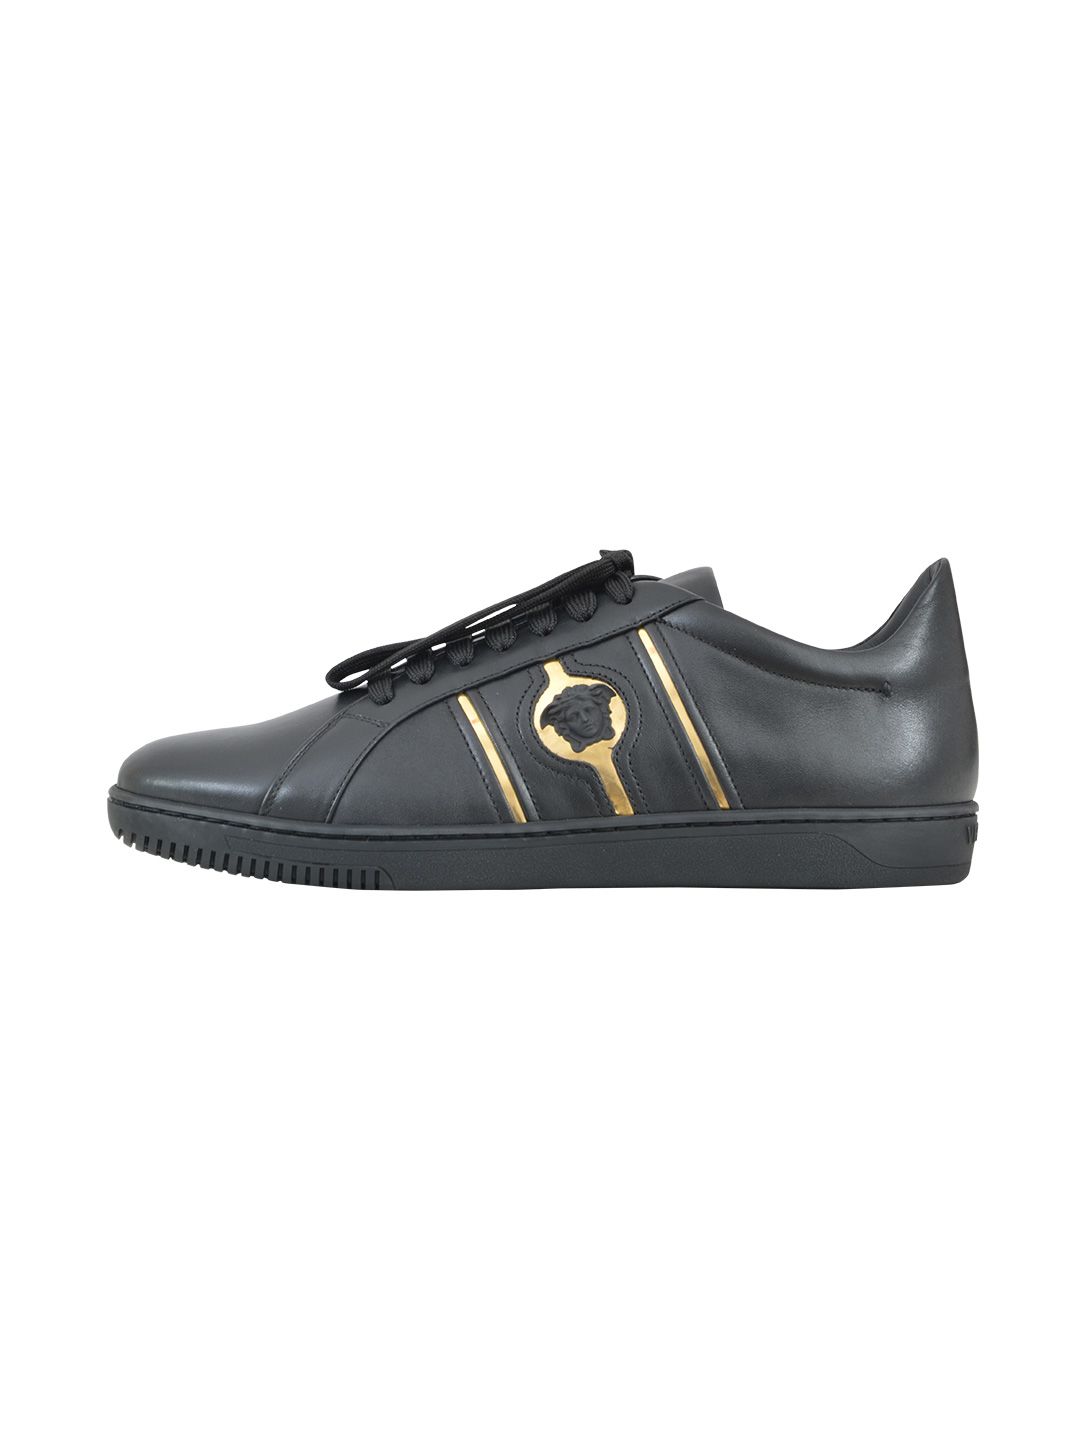 Versace - Versace Low-top Medusa Sneaker - Black/gold, Men's Sneakers ...